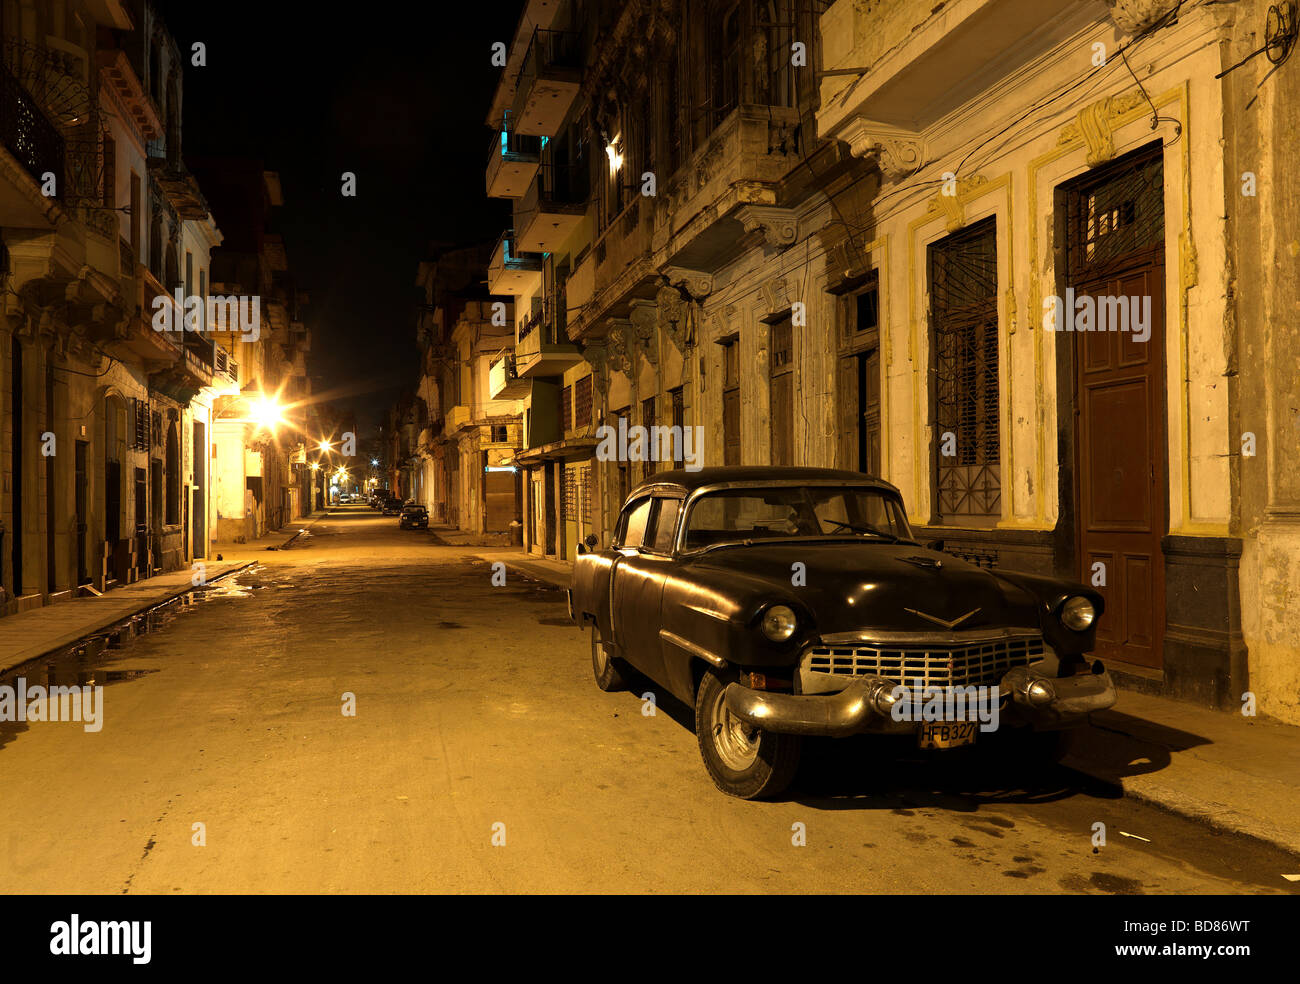 Ein amerikanisches historischen Auto in den Straßen von Havanna Kuba mit seinen alten beleuchteten Häusern gesehen in der Nacht vom 28. Februar 2009. Stockfoto